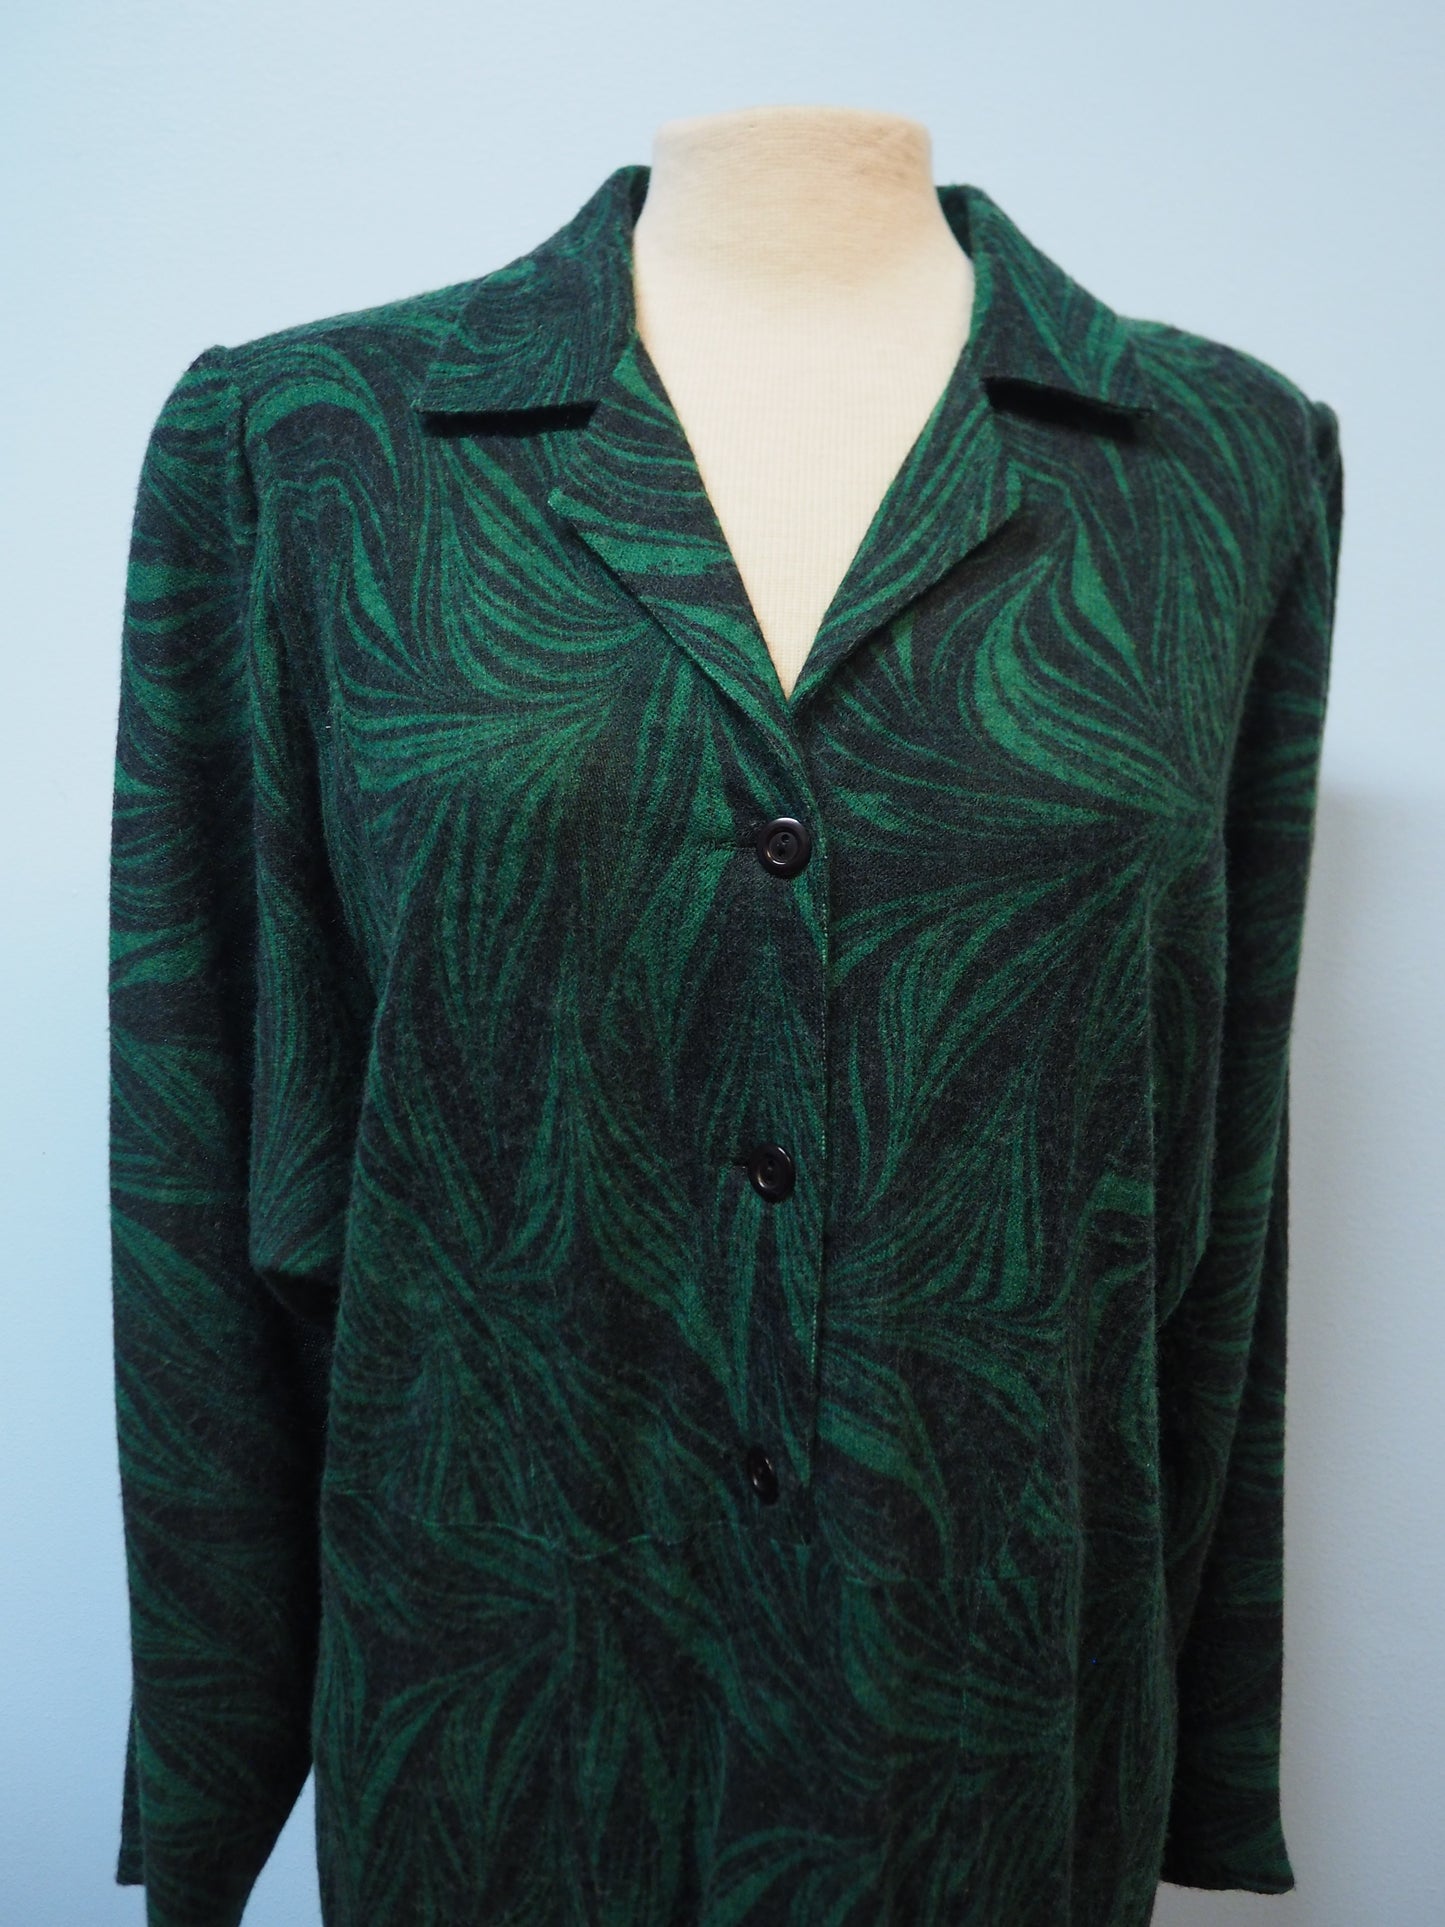 Vihreä kuviollinen Joutselan mekko käyttämätöntä vanhaa varastoa